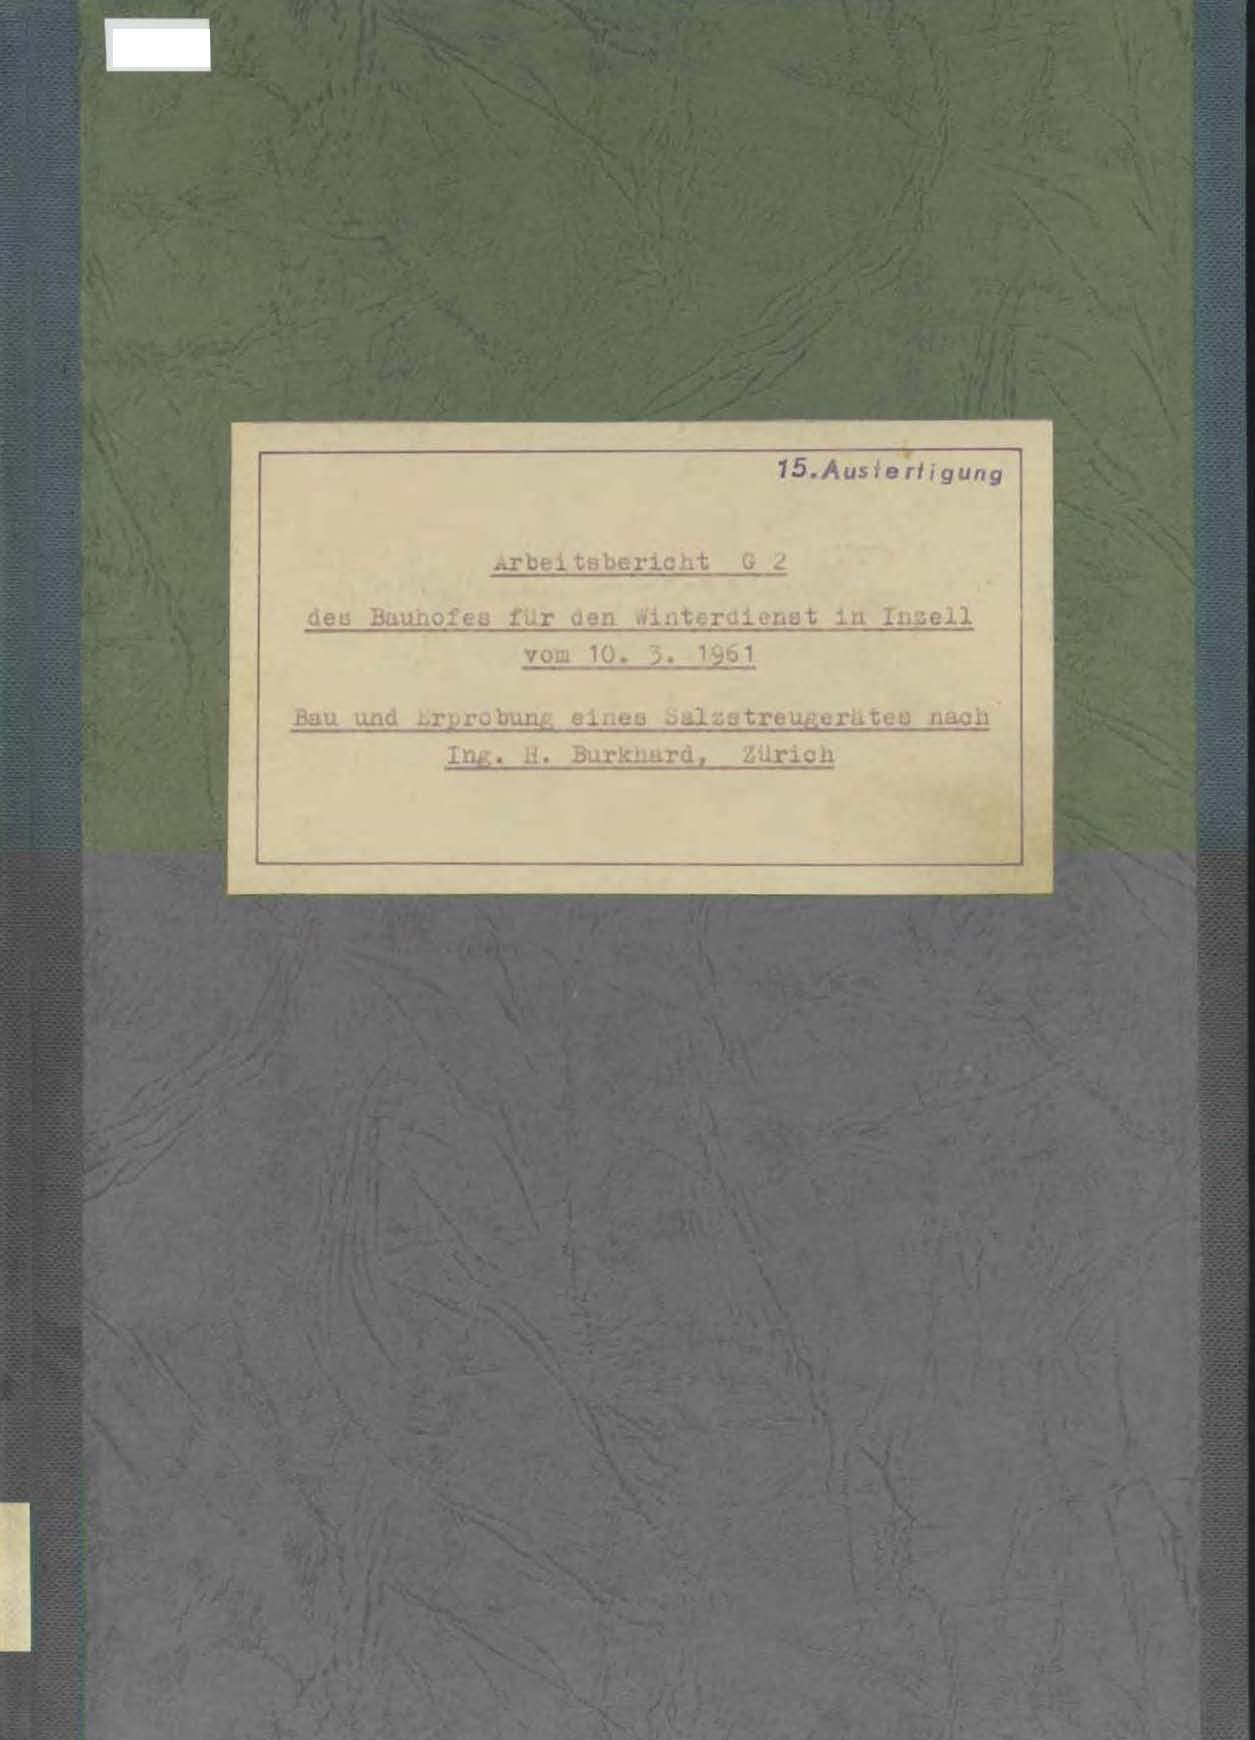 Arbeitsbericht G2 des Bauhofes für den Winterdienst in Inzell vom 10.3.1961